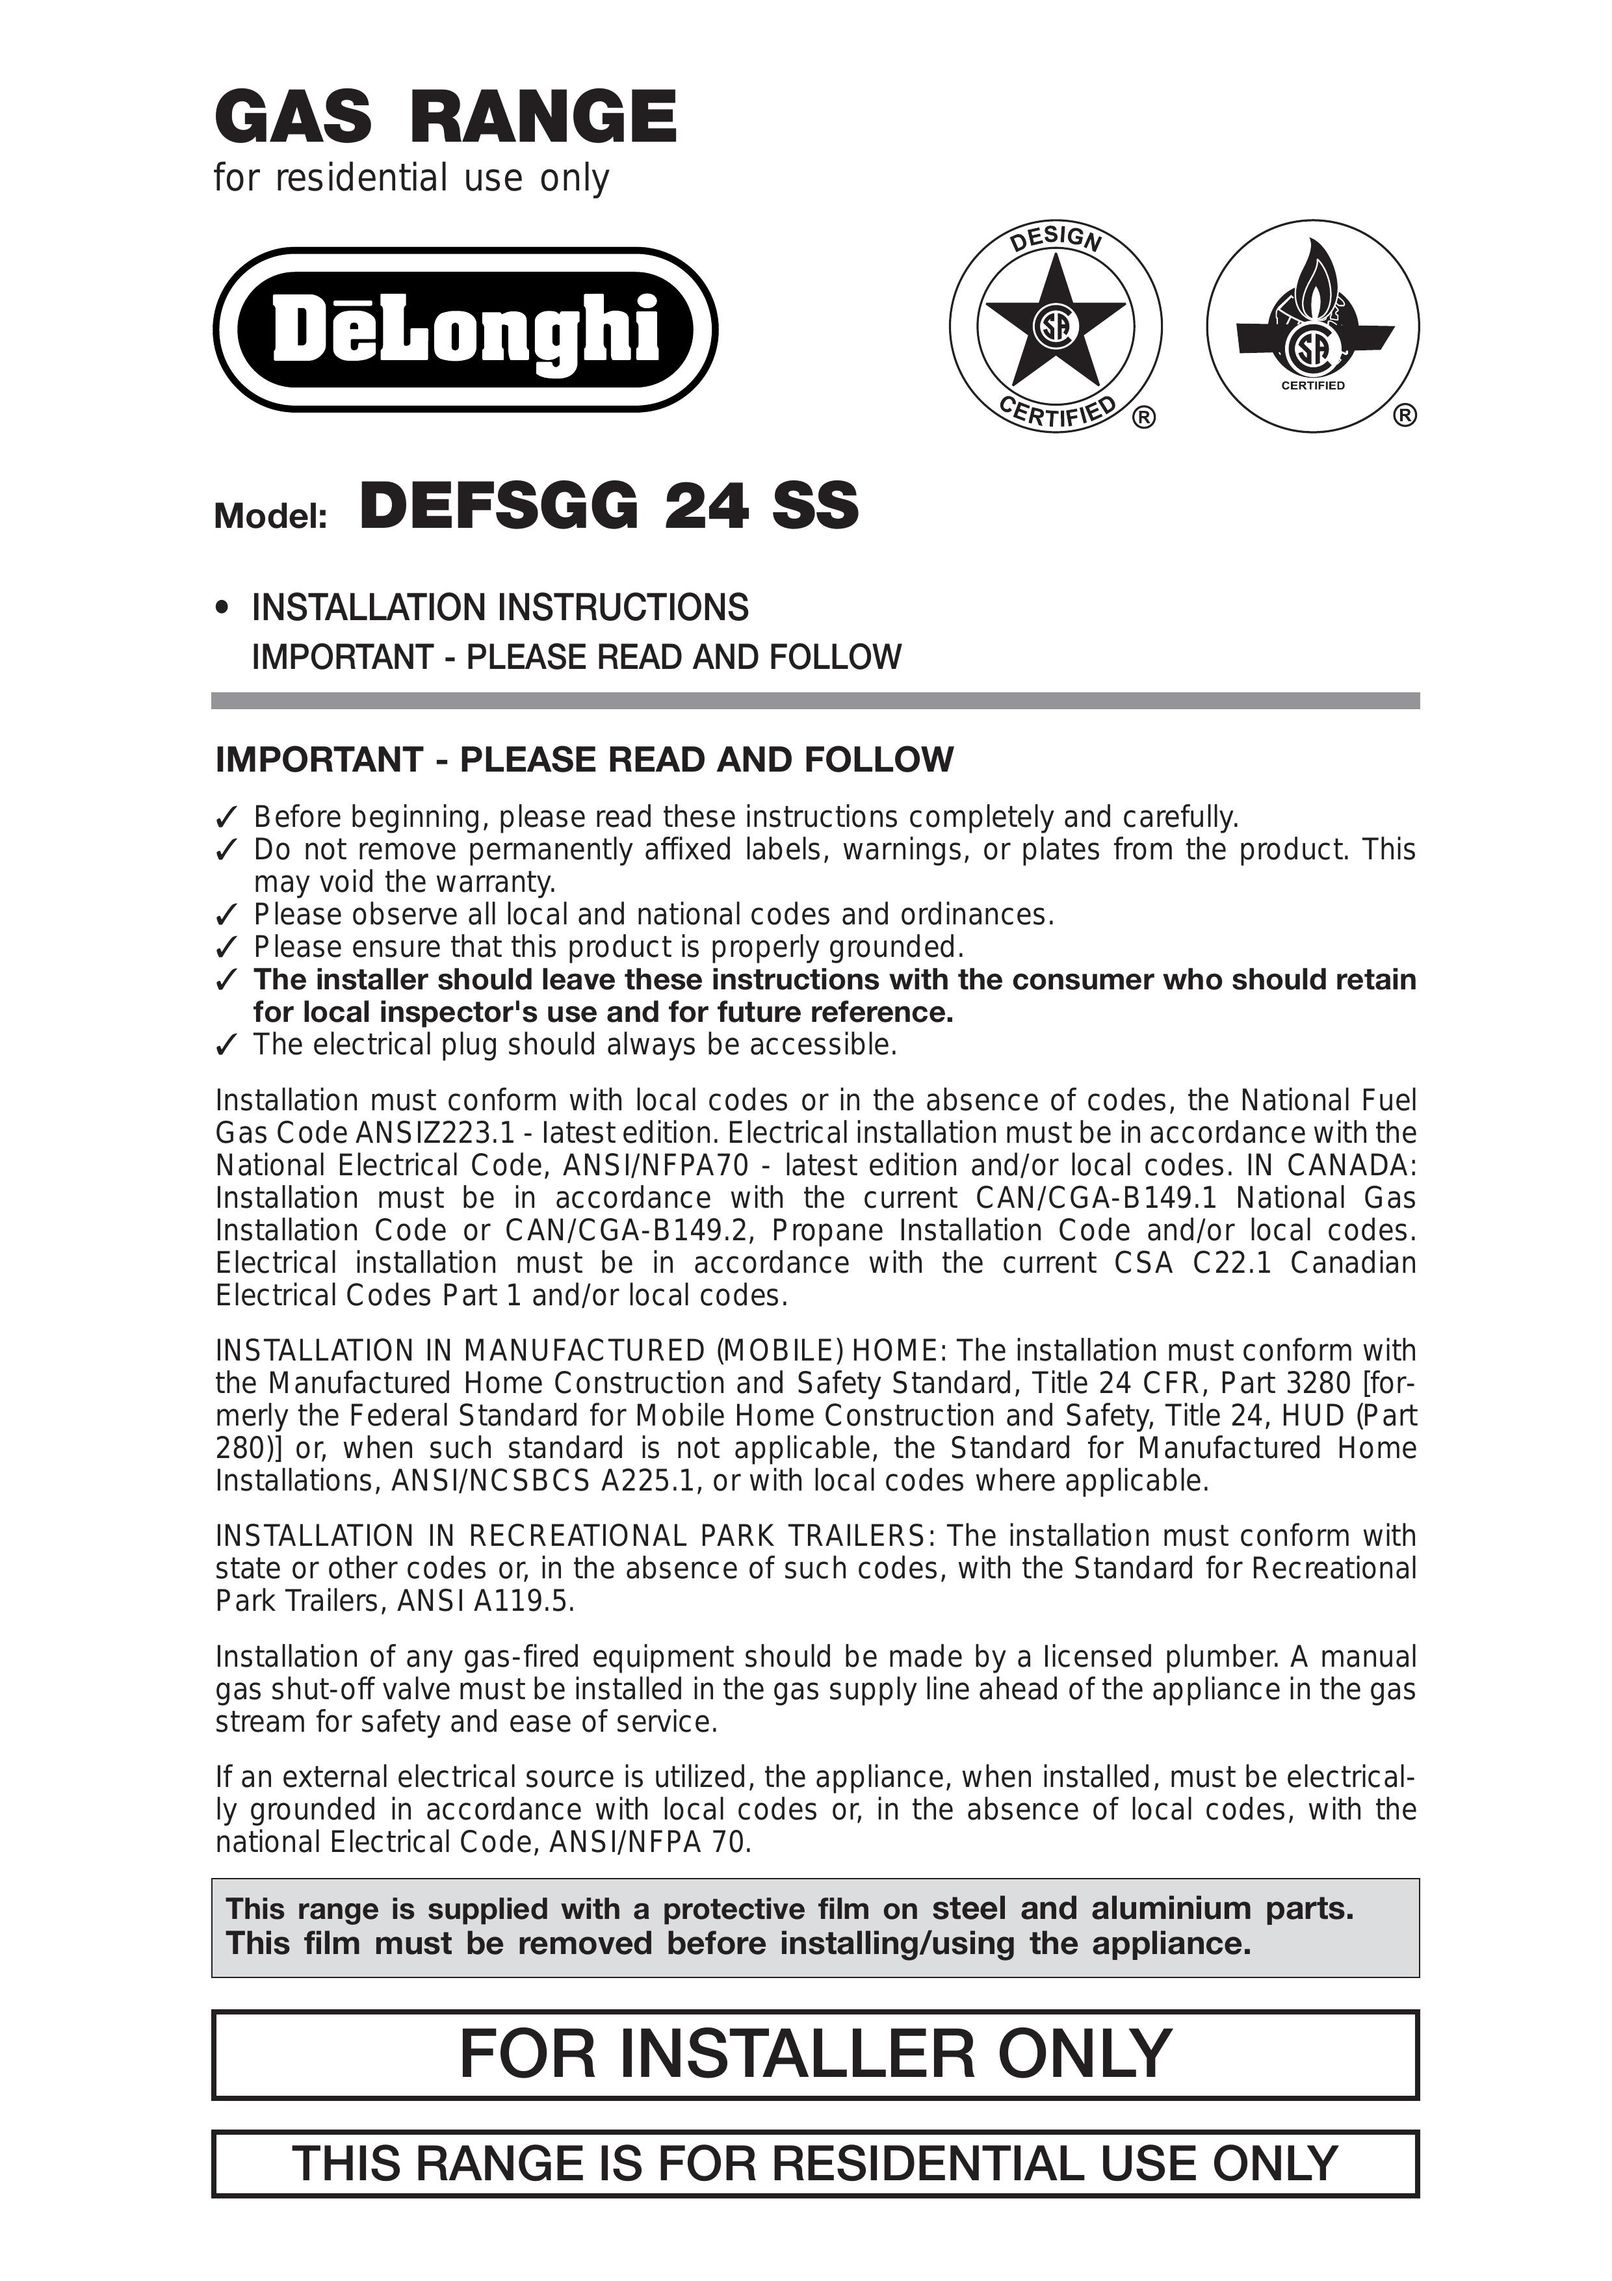 DeLonghi DEFSGG 24 SS Range User Manual